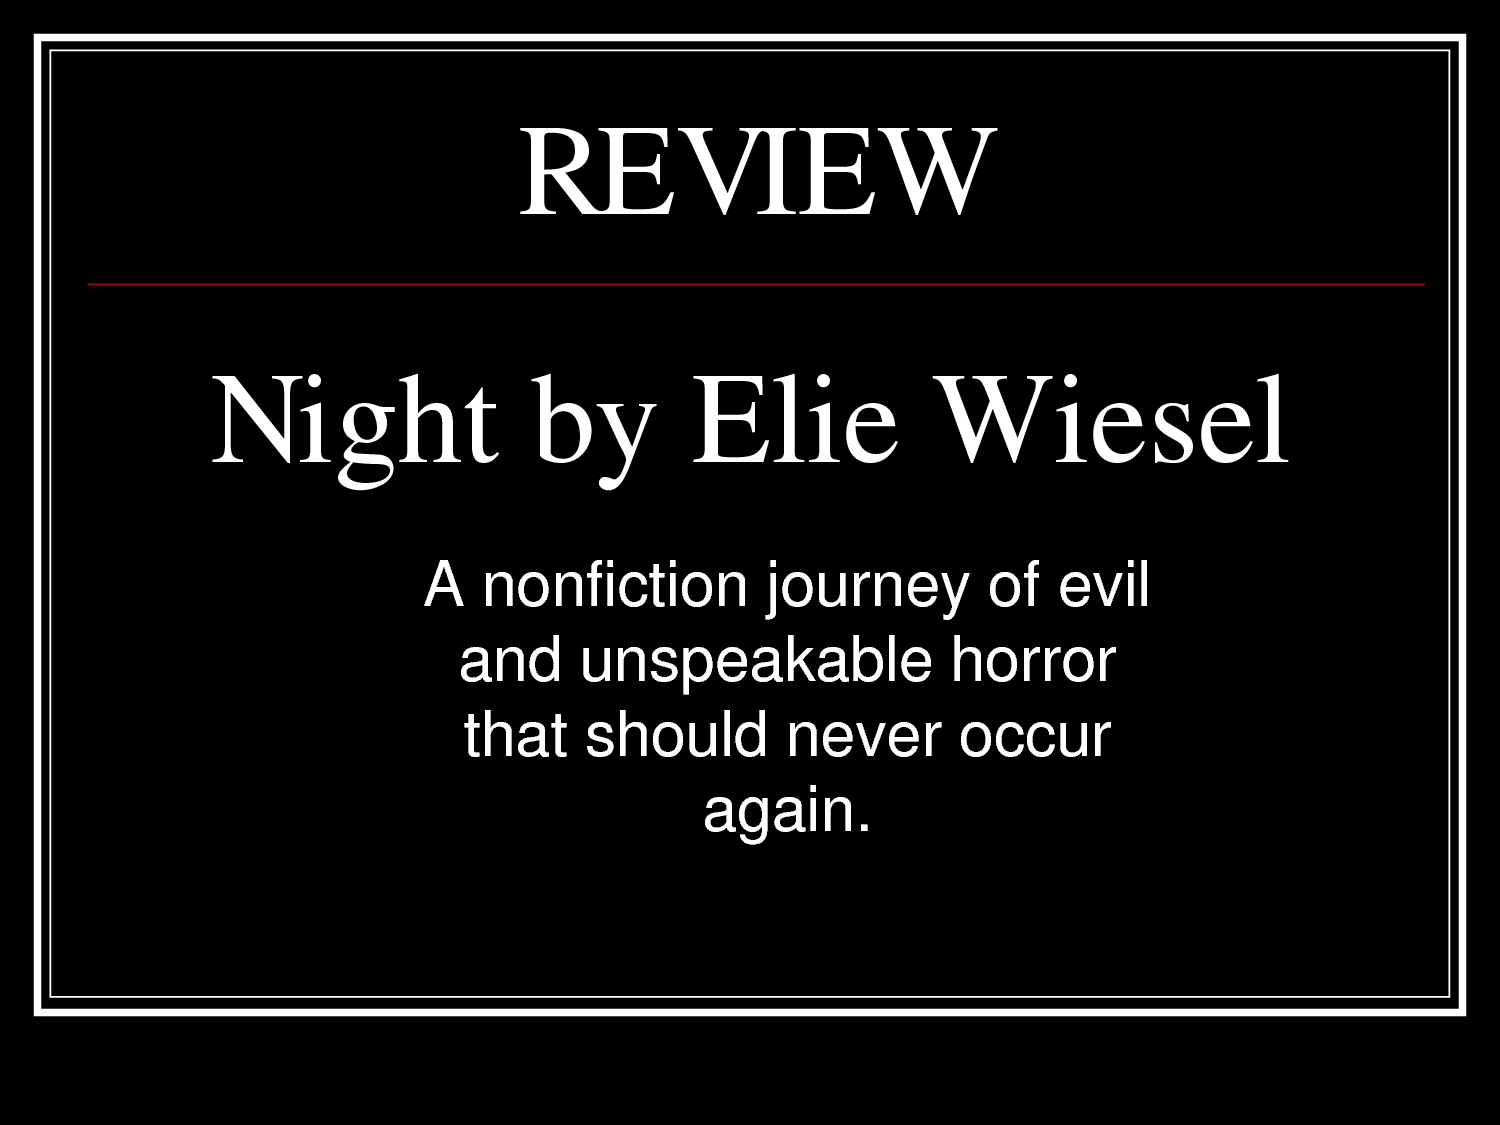 Elie wiesel night book report